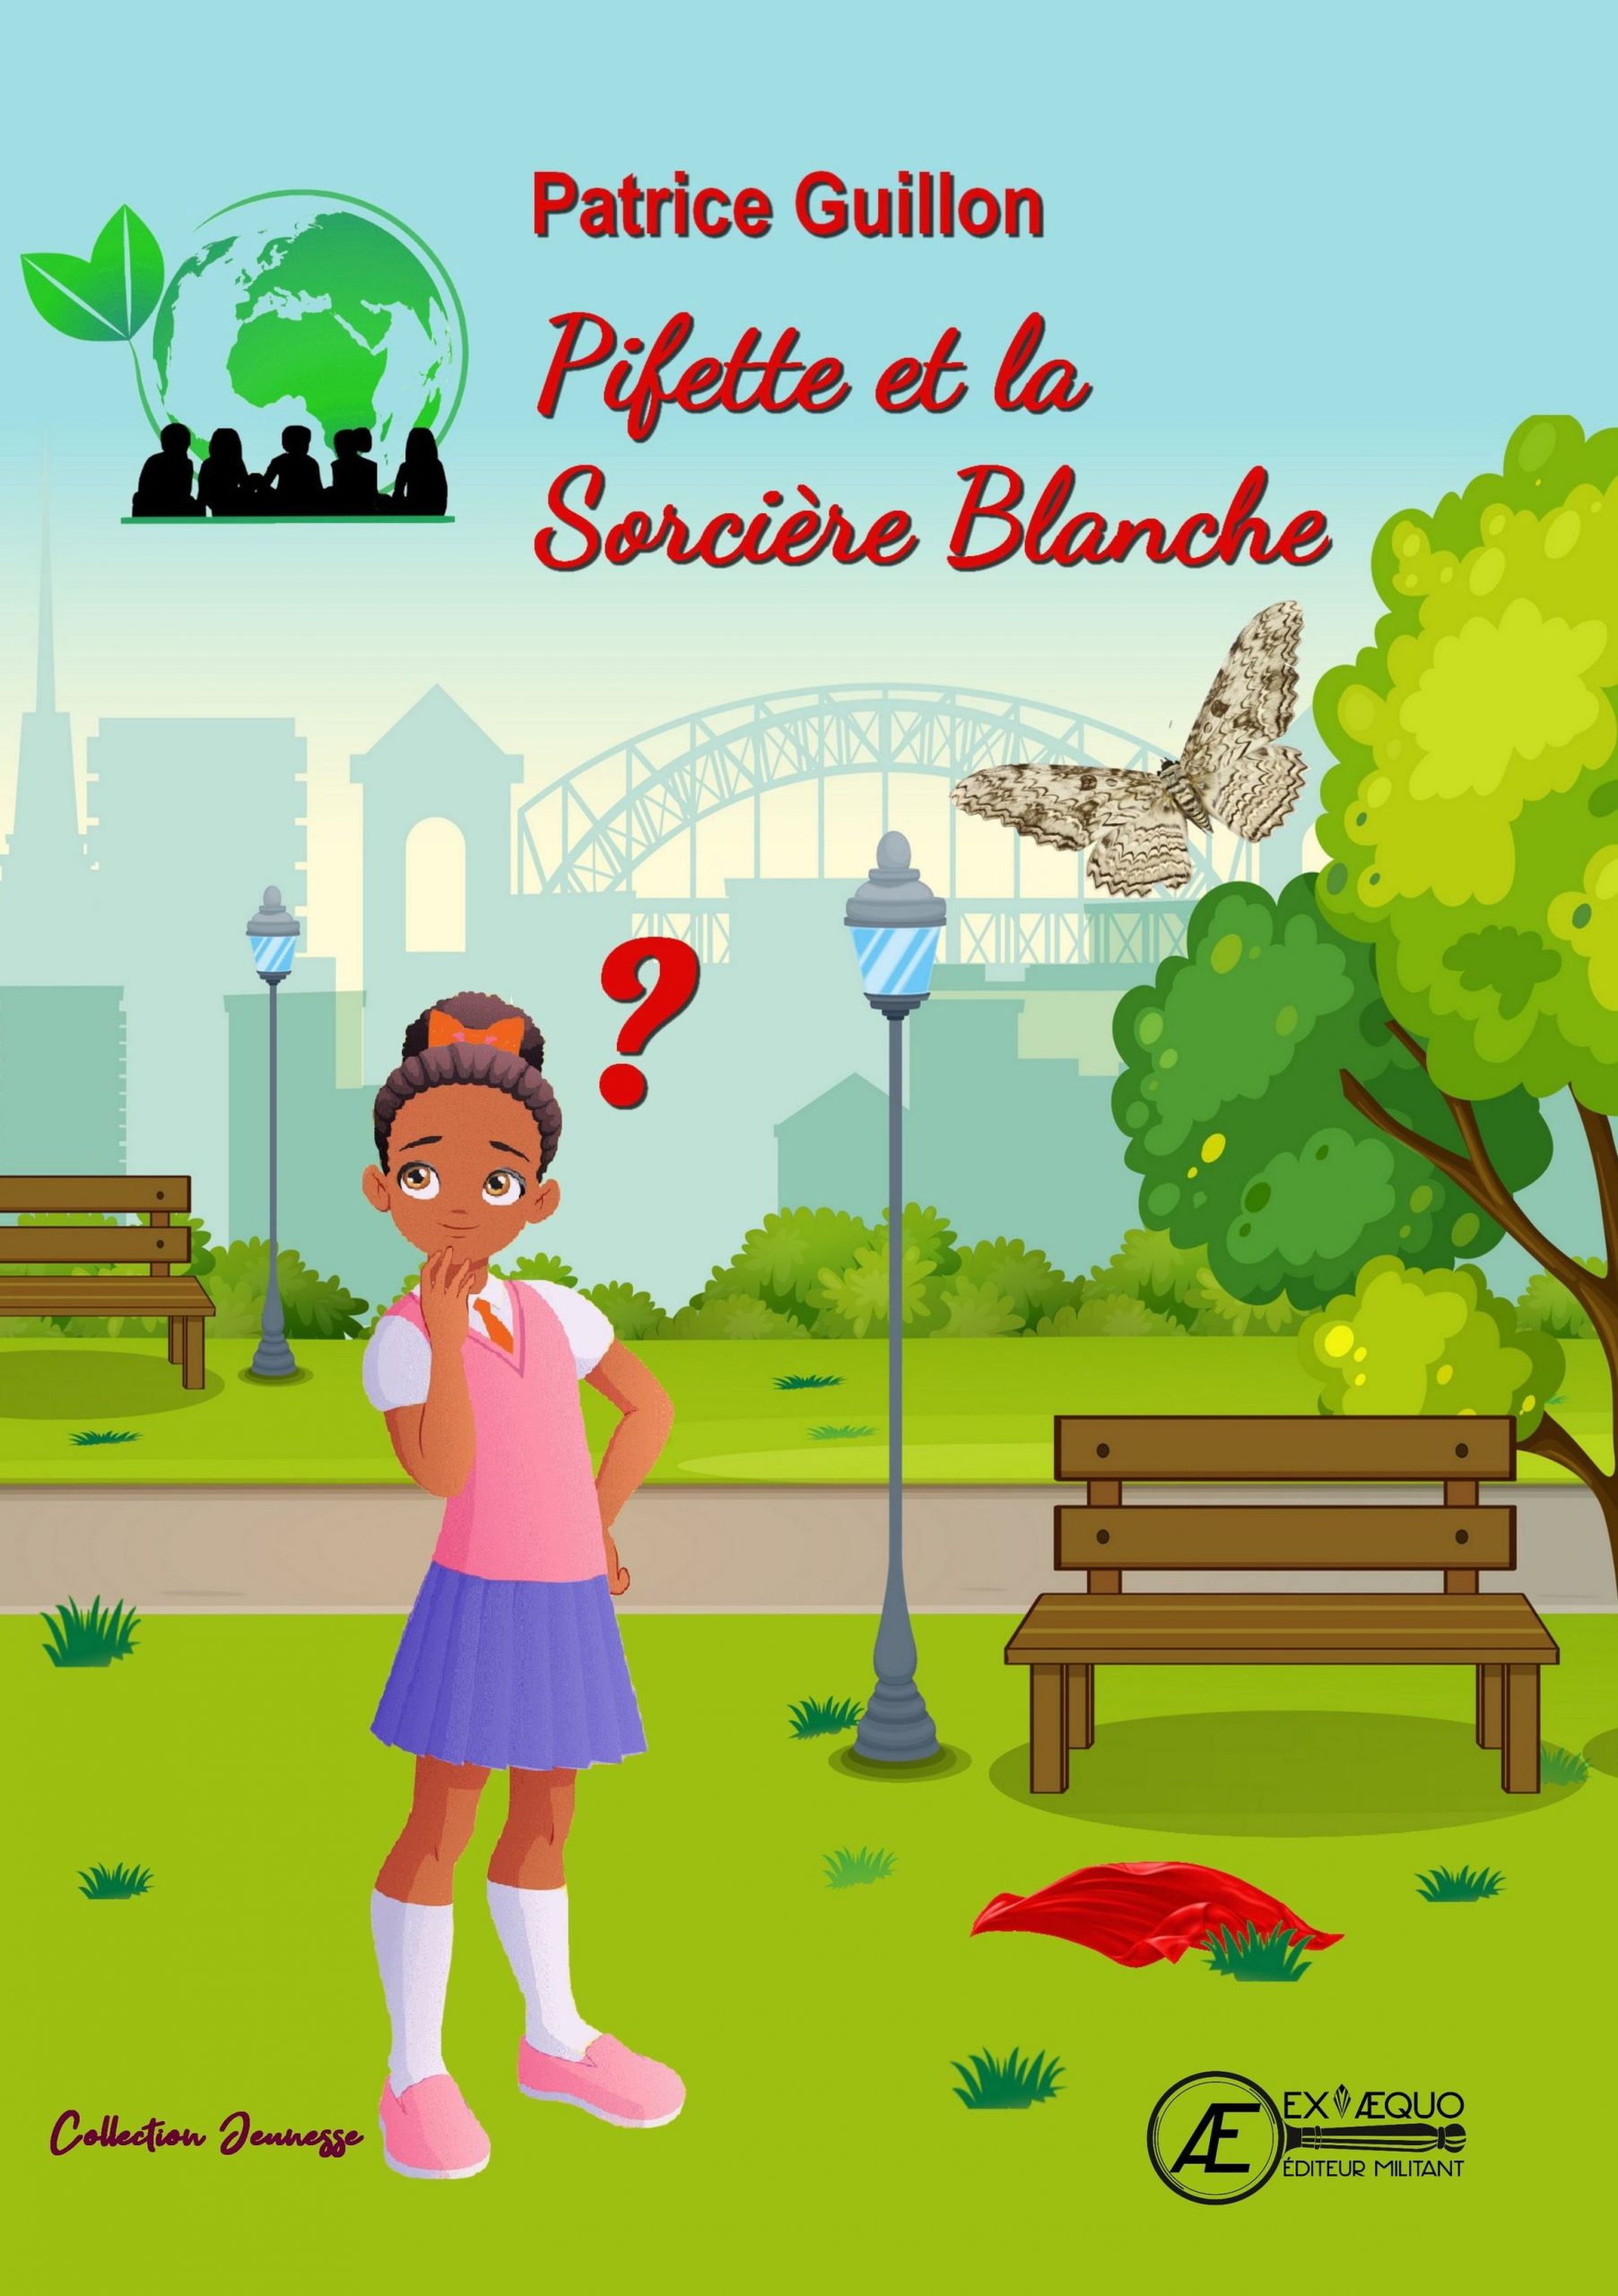 You are currently viewing Pifette et la socière blanche, de Patrice Guillon